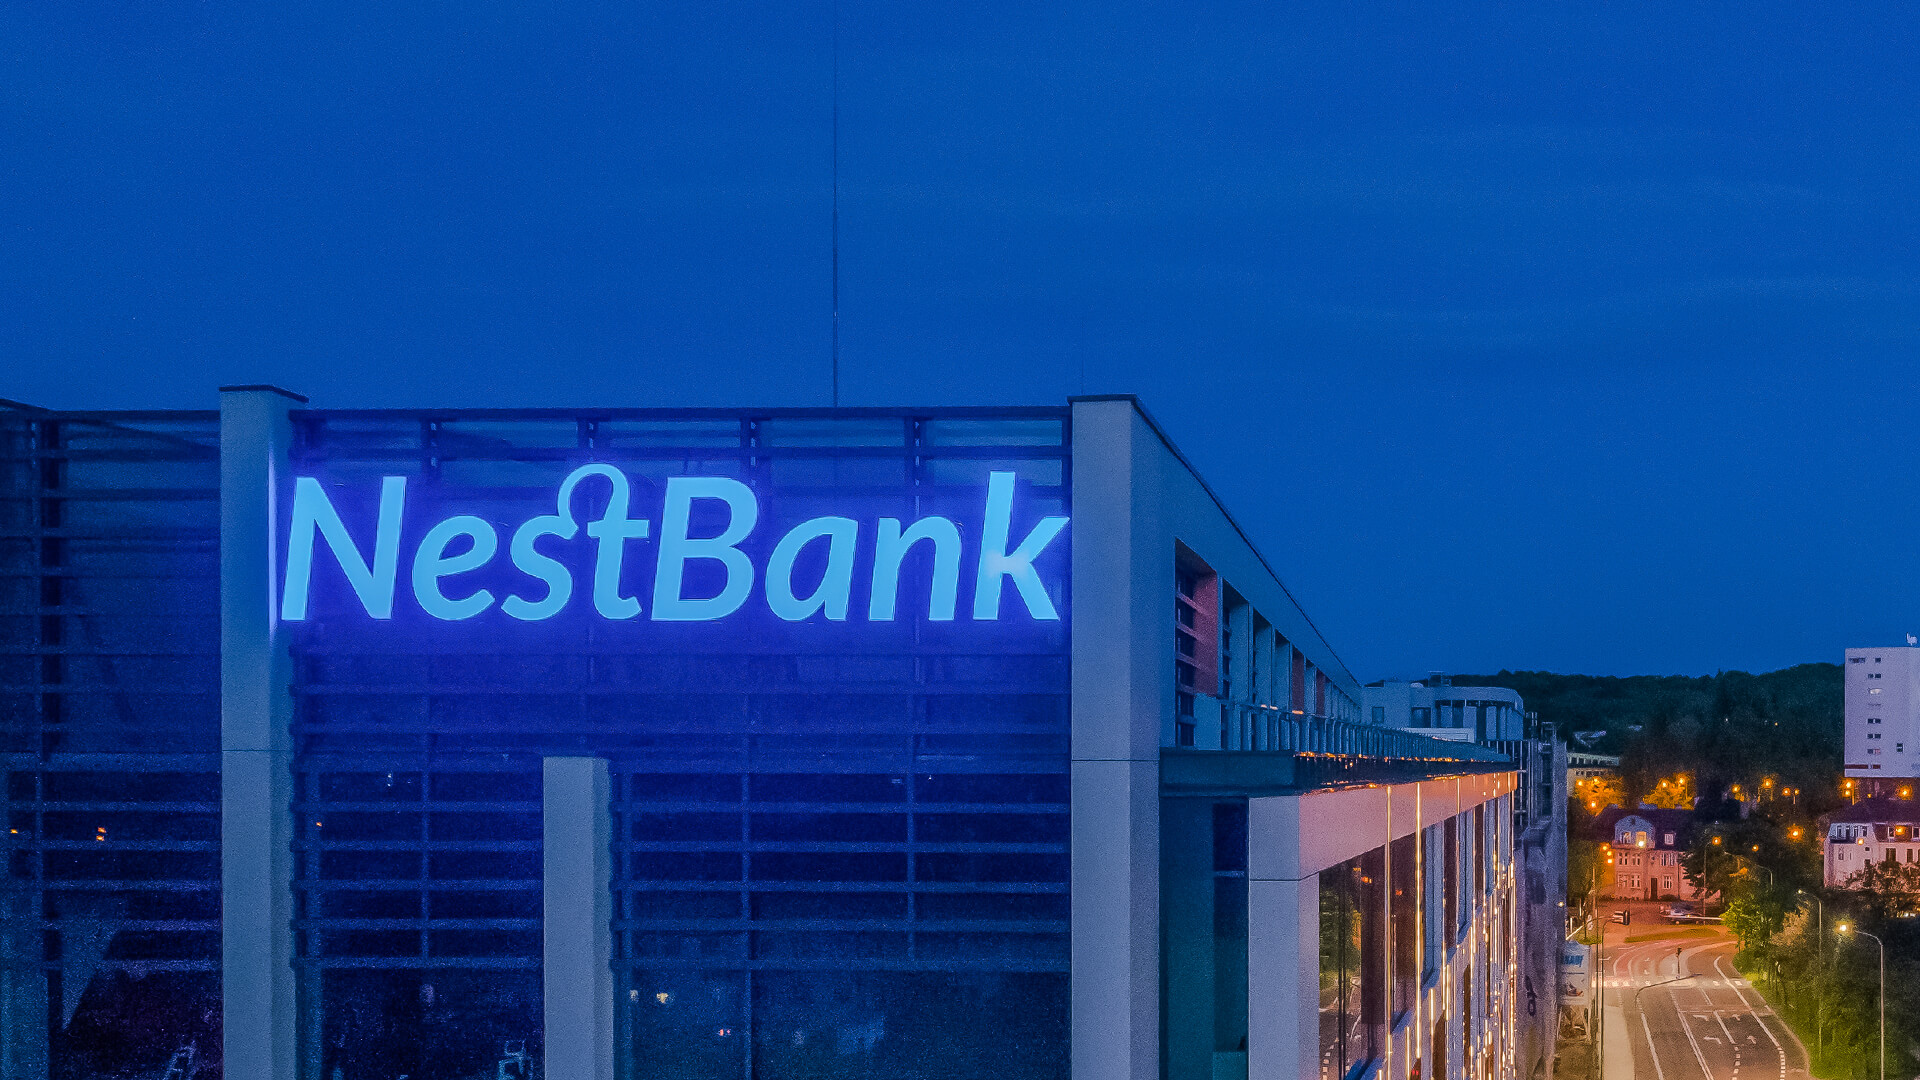 nest bank nestbank - litery-blokowe-led-letters-bank-3d-chanel-letters-reklama-nest-bank-litery-3d-na-budynku-litery-nest-bank